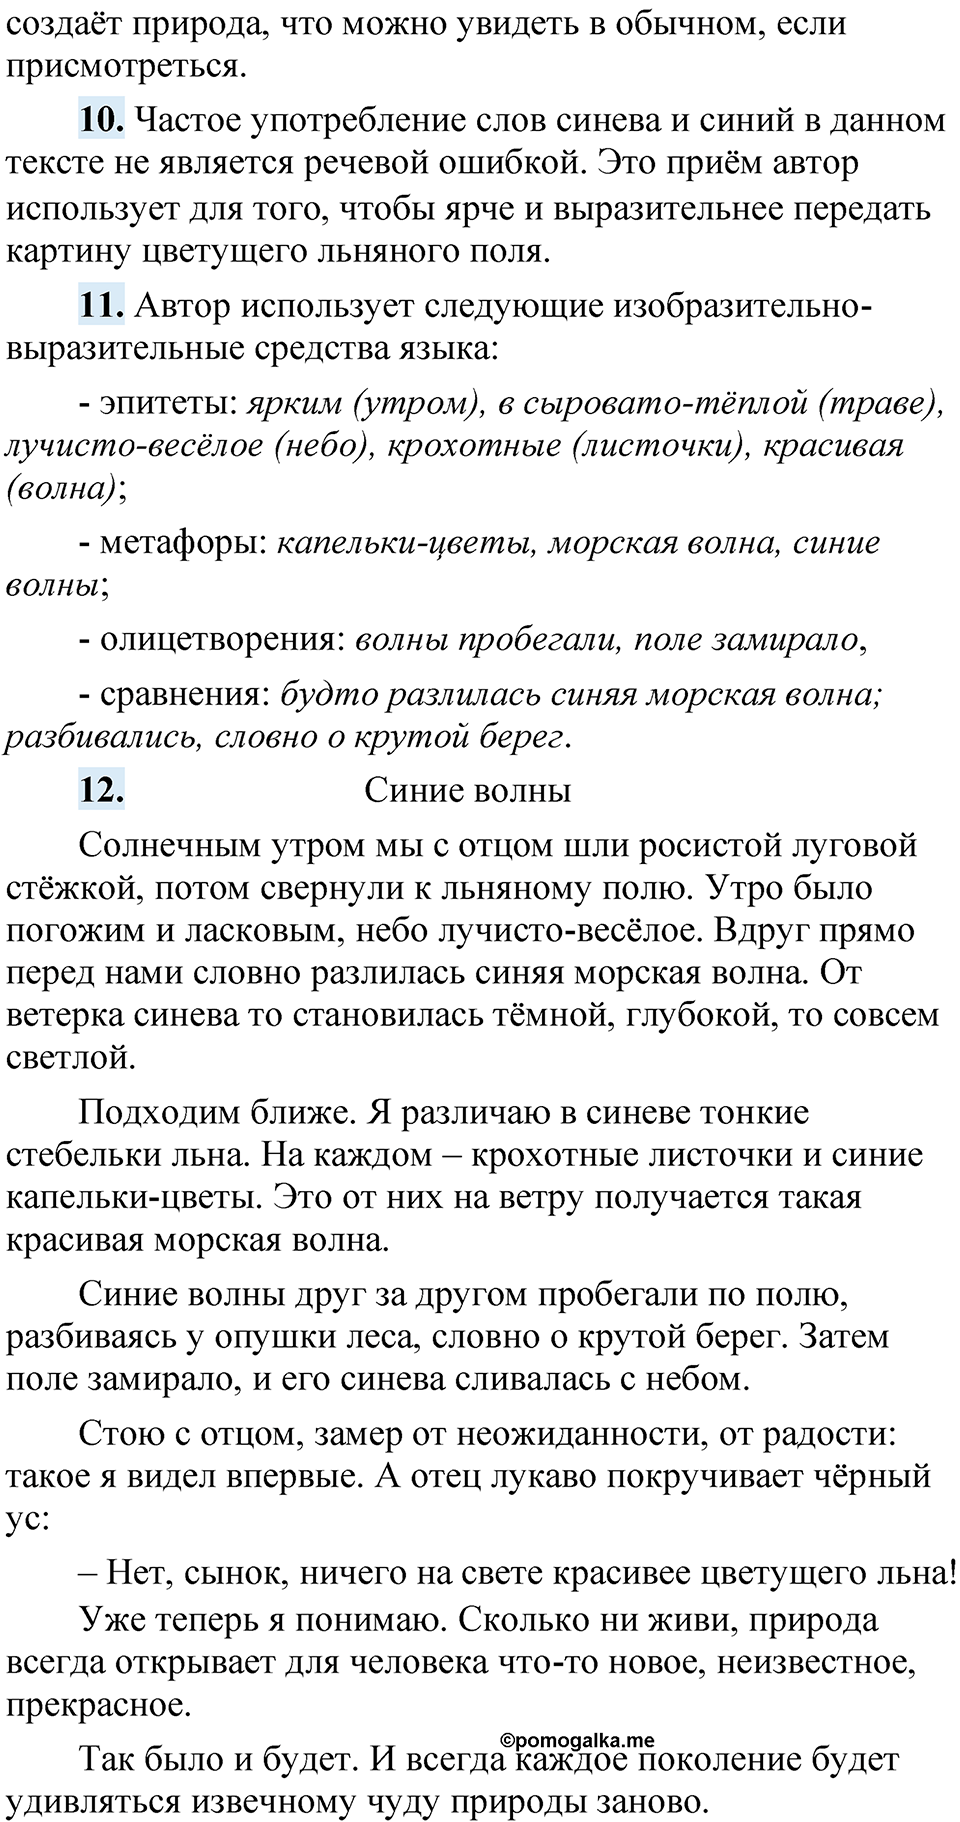 страница 76 Анализируем текст русский язык 5 класс Быстрова, Кибирева 1 часть 2021 год